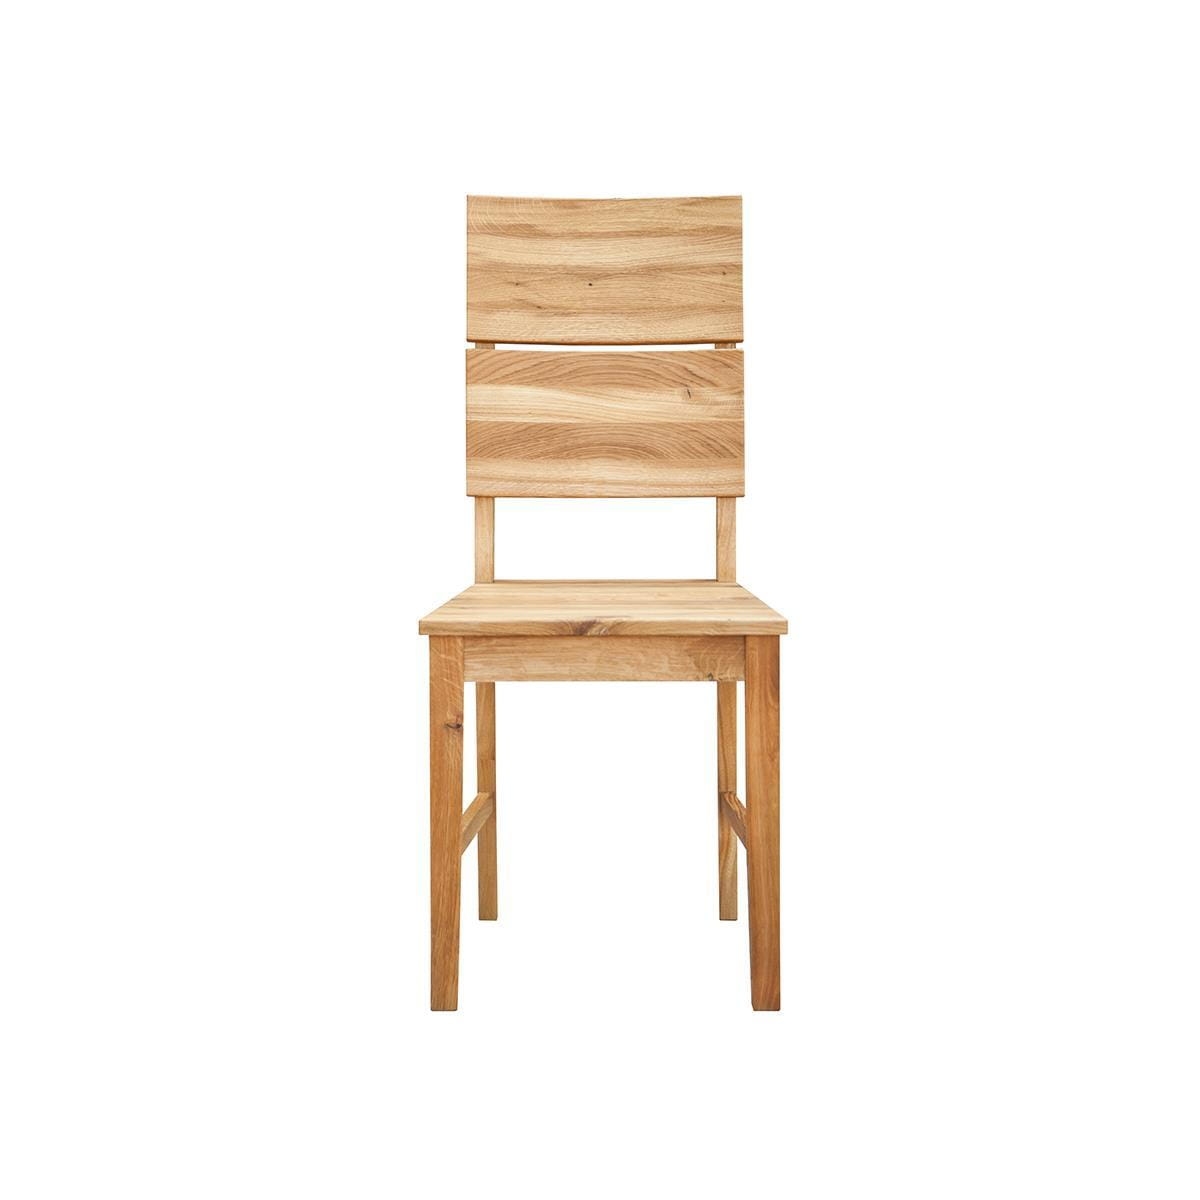 Drevená jedálenská stolička KDB02 s dubovým sedákom